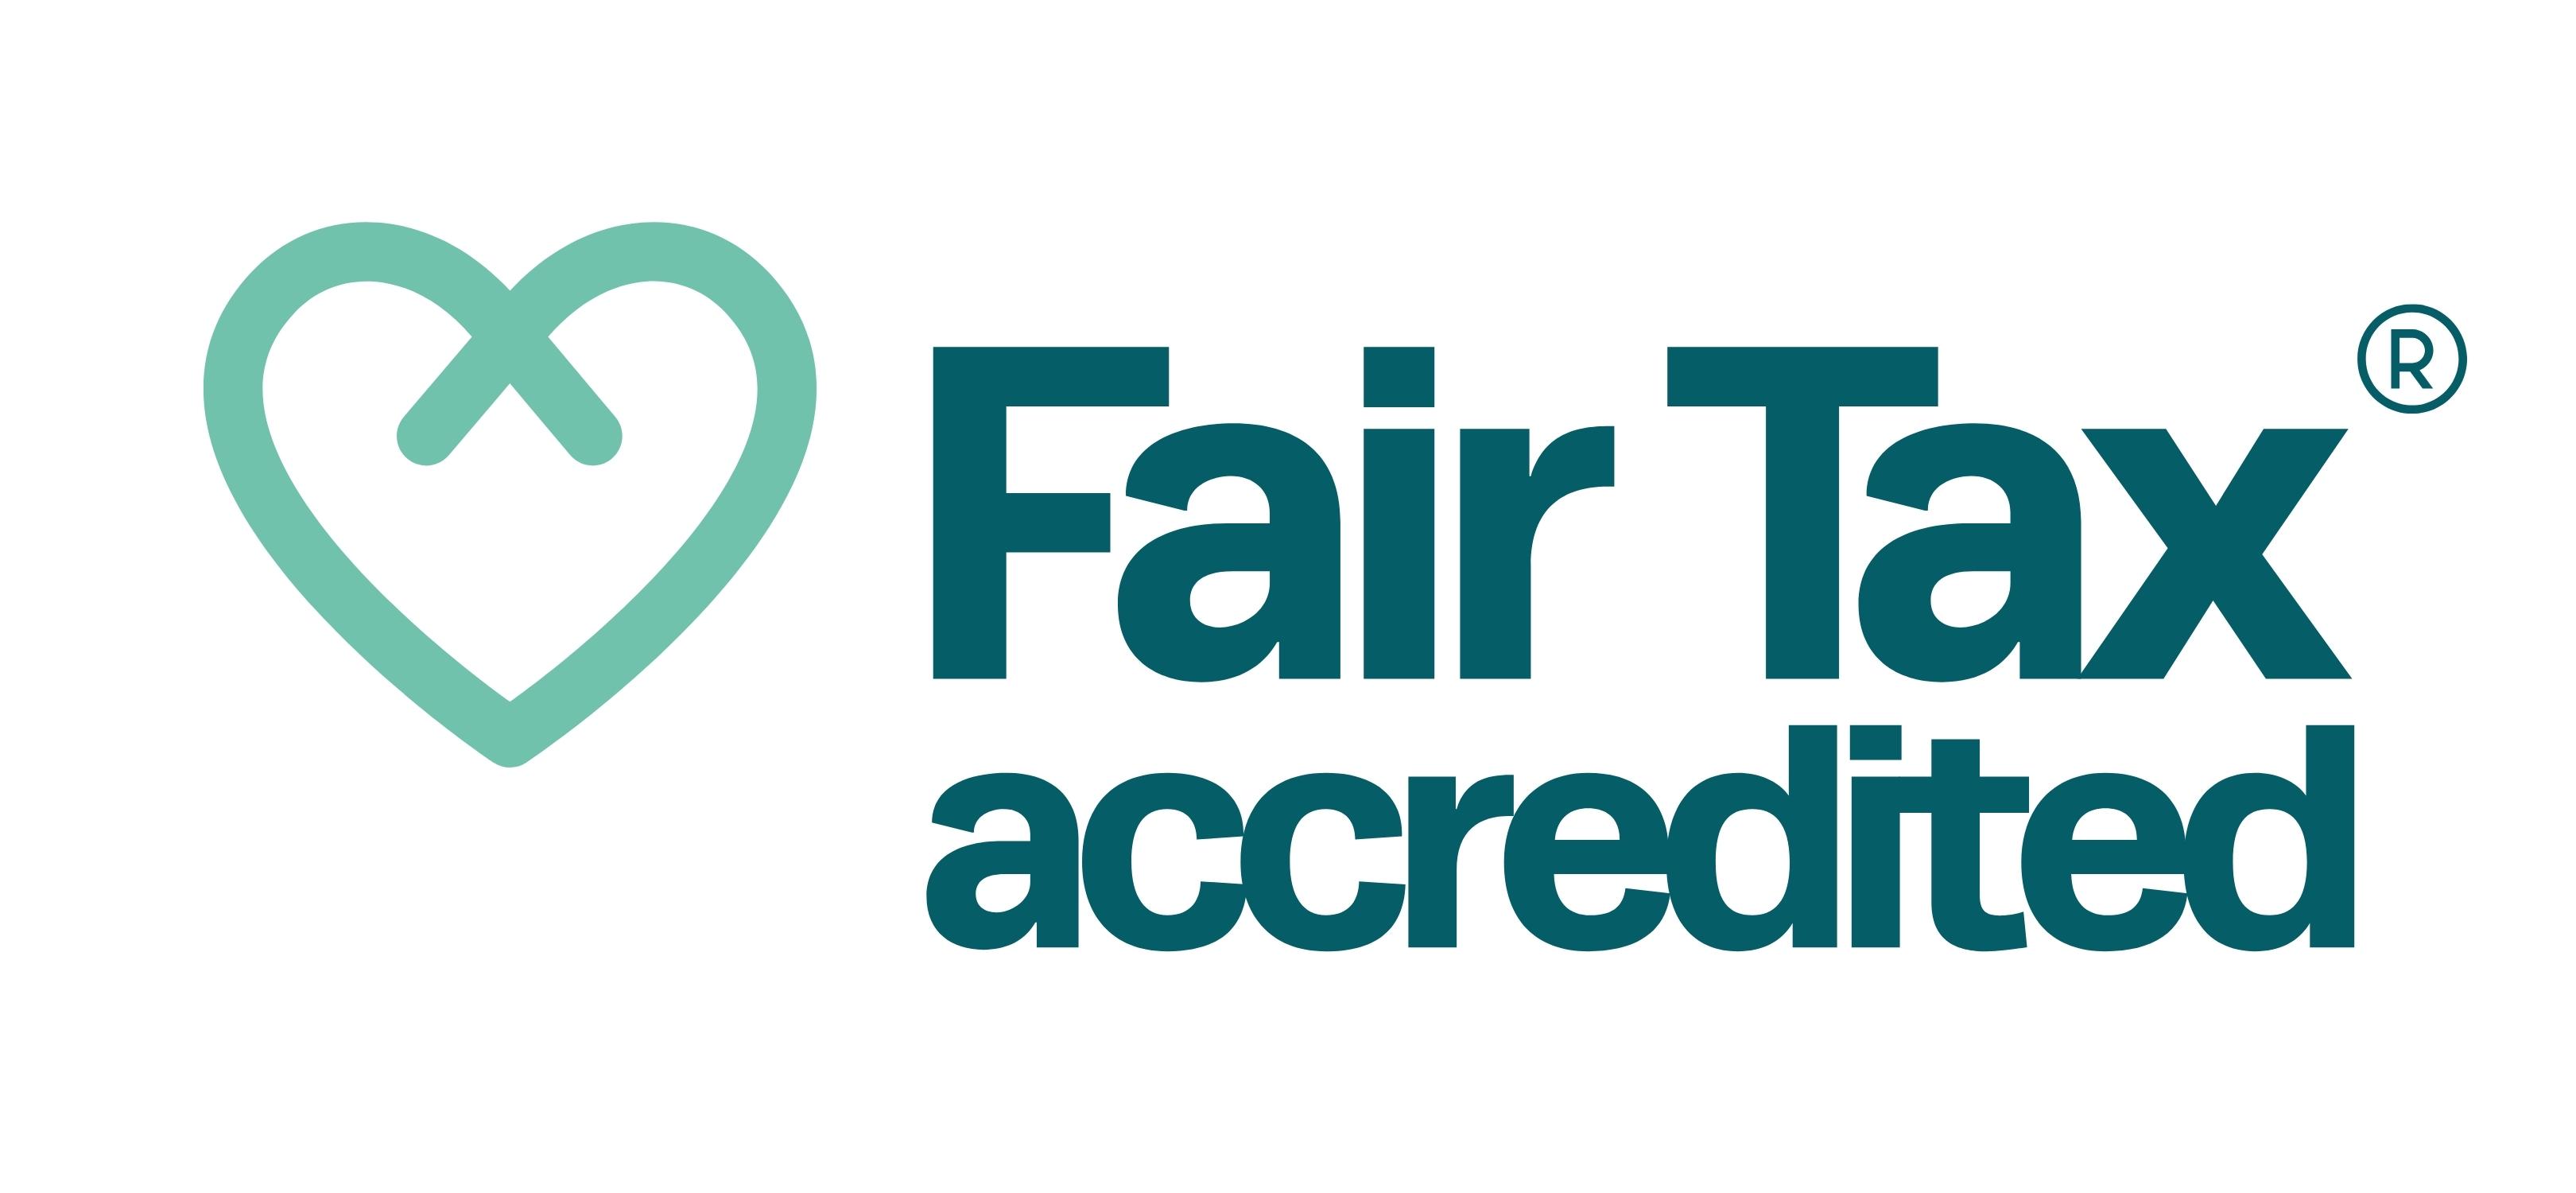 Fair tax accredited